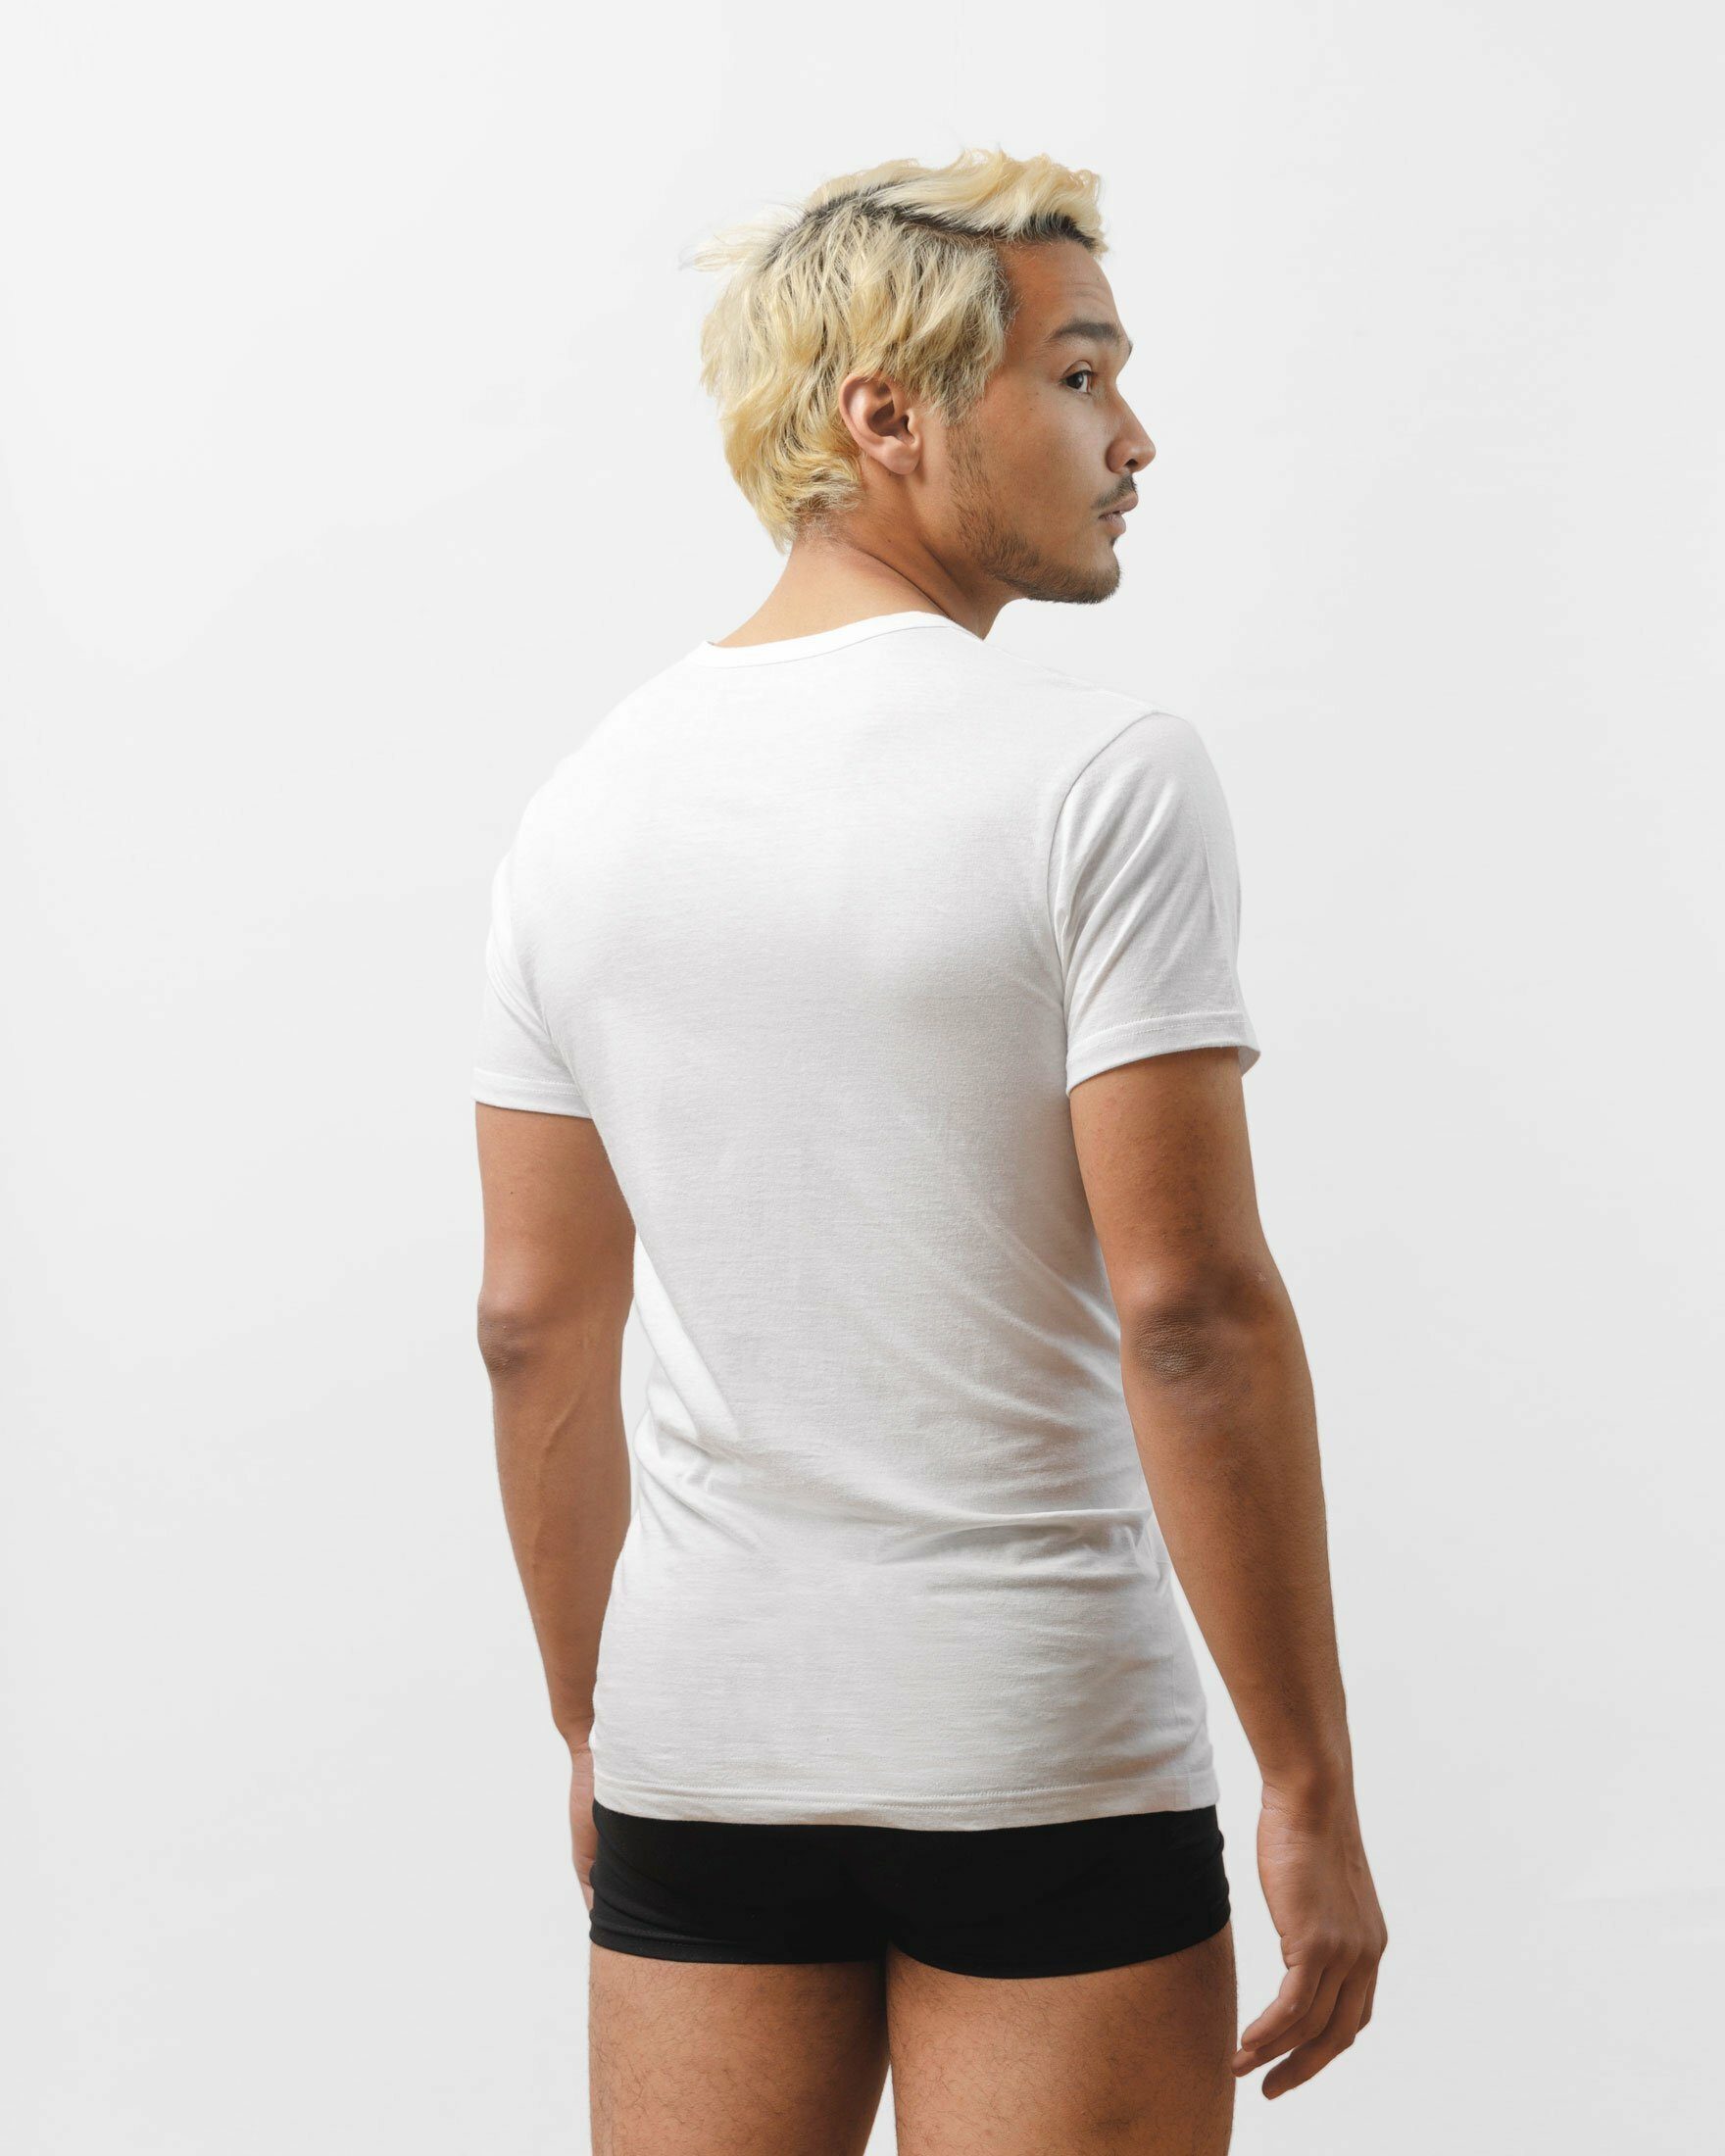 mit Bio-Baumwolle, Unterhemden Herren extra SNOCKS Weiß geschnitten (3 aus Unterziehshirt lang 3-St) V-Ausschnitt Stück, T Shirt